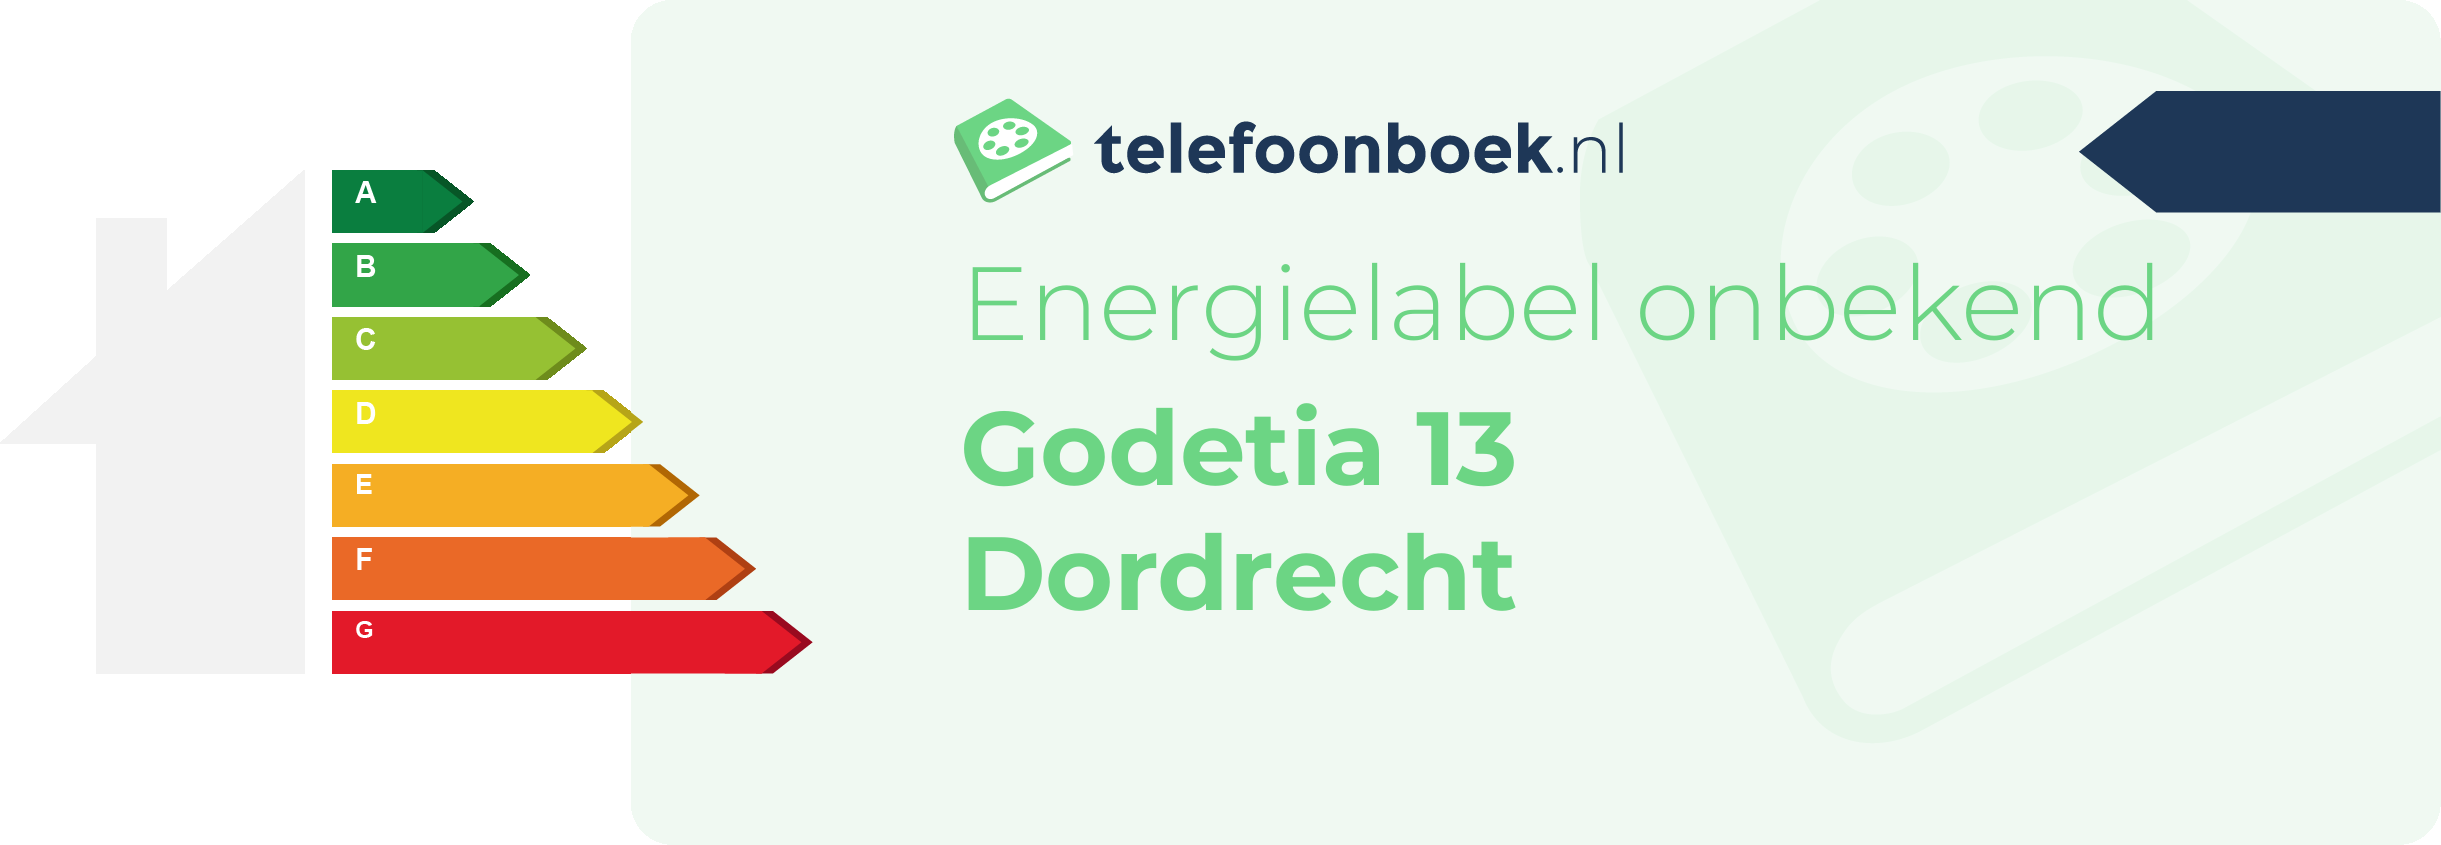 Energielabel Godetia 13 Dordrecht